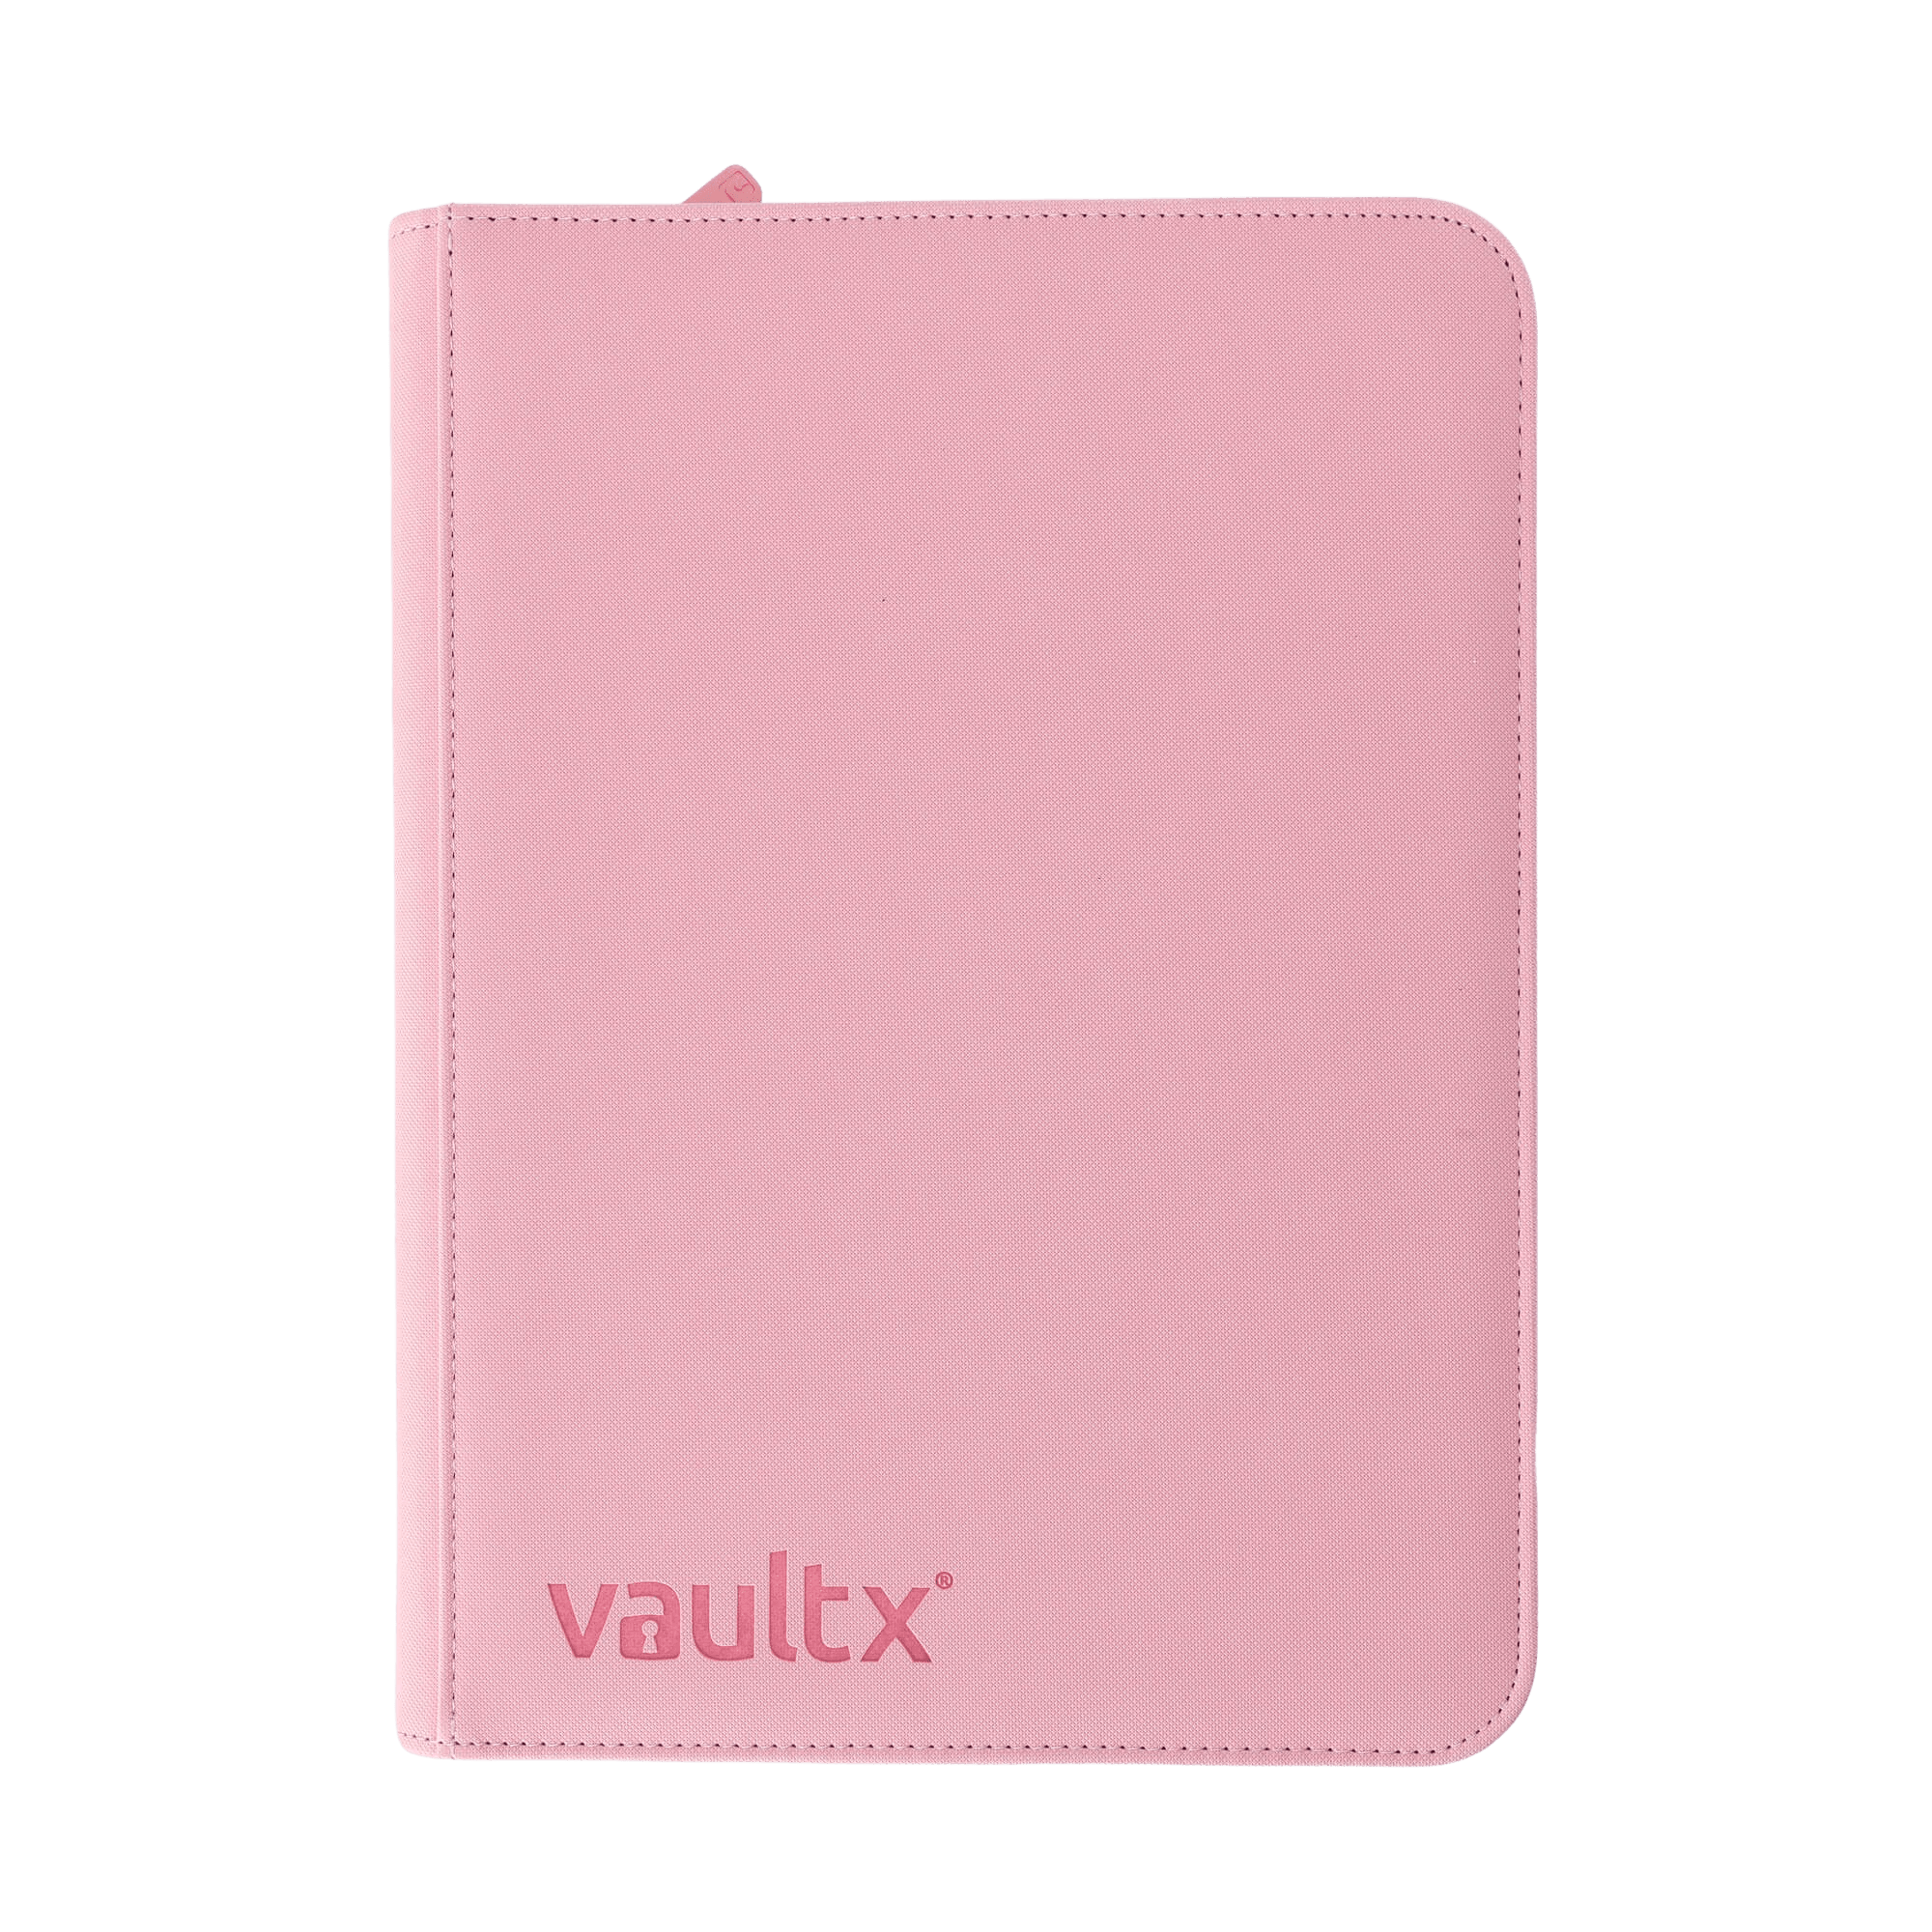 Vault X 4-Pocket Exo-Tec® Zip Binder - Just Pink - The Card Vault